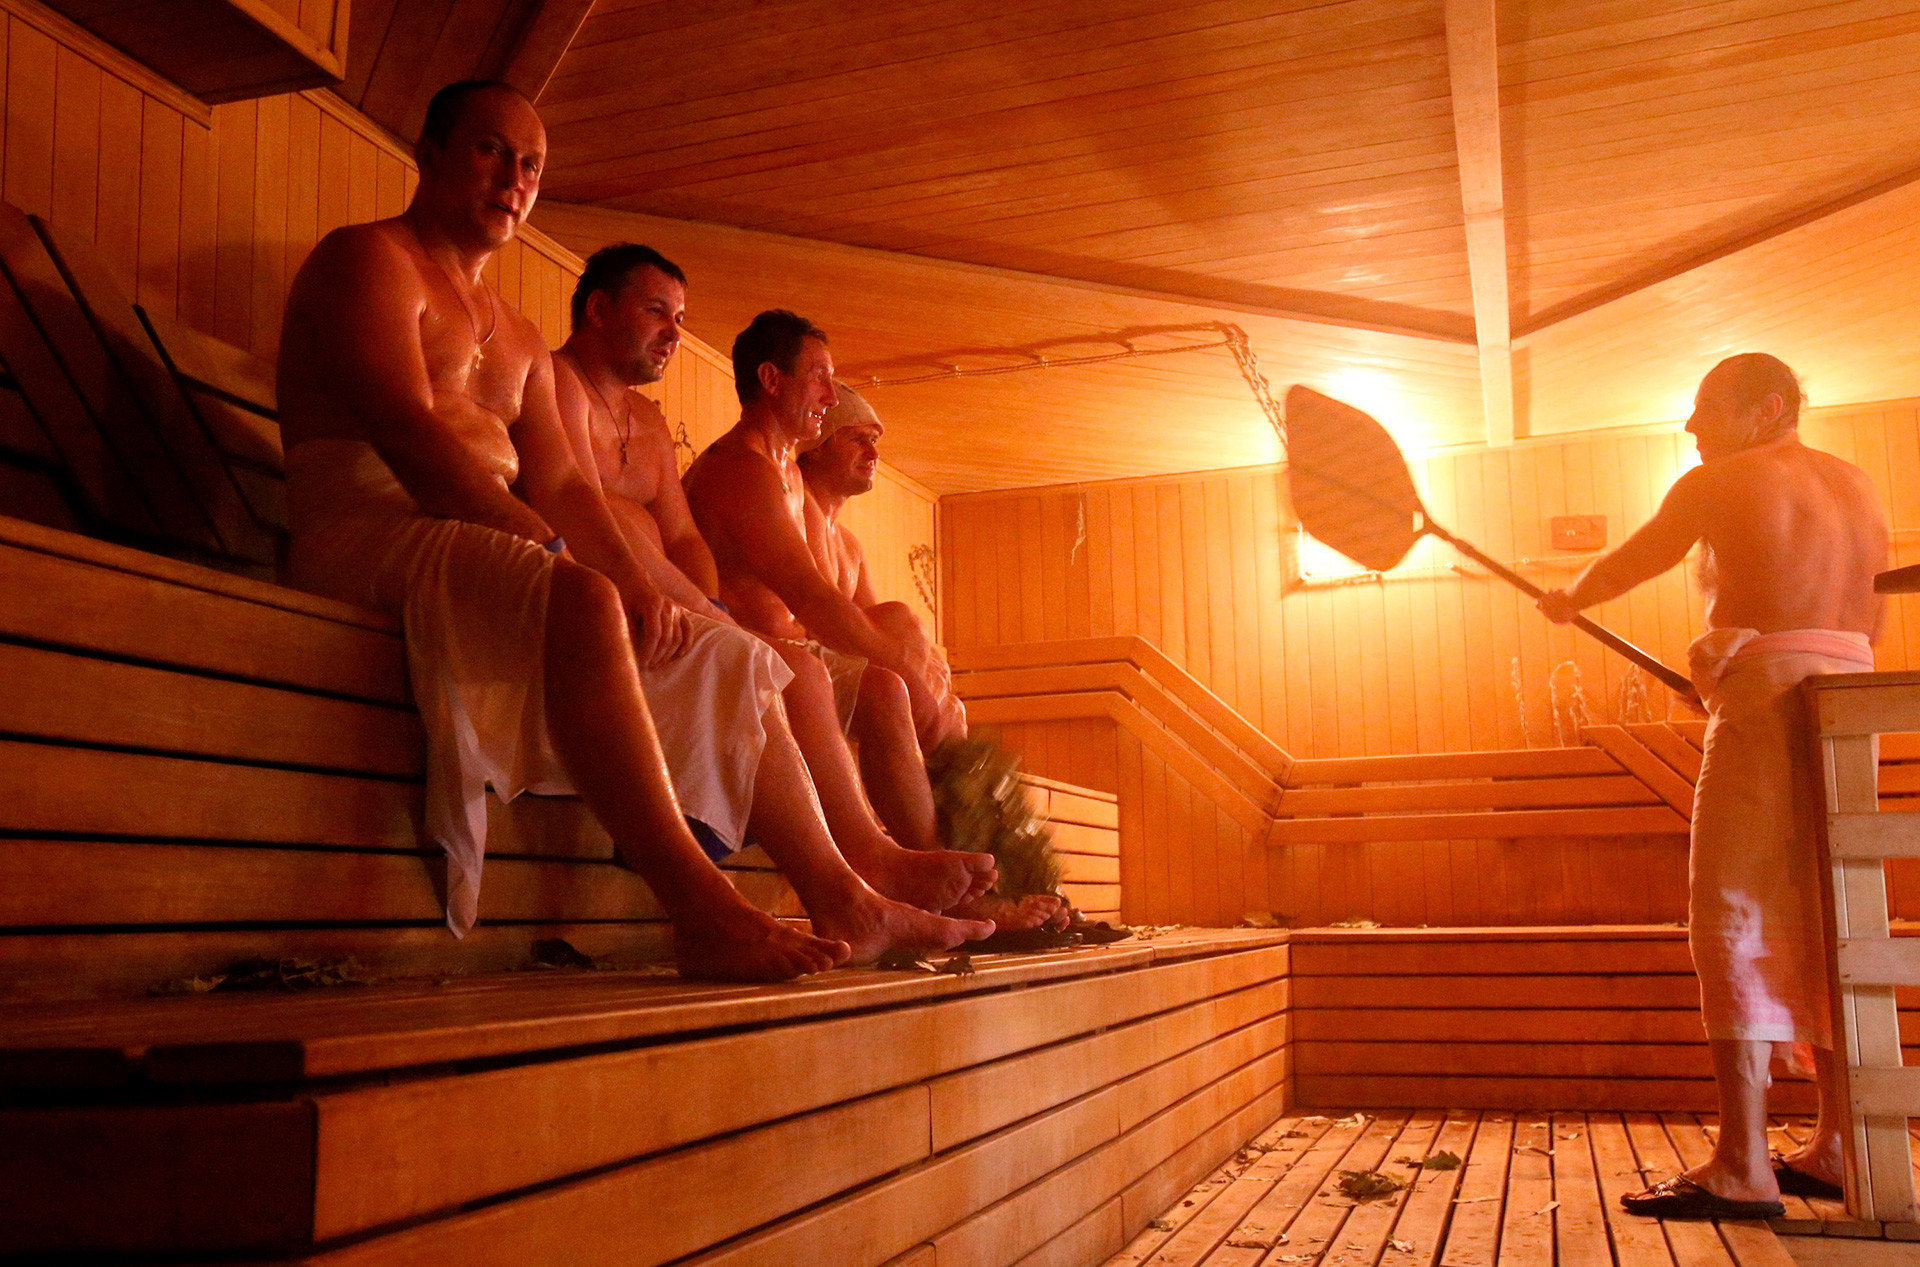 Bânia, a sauna russa